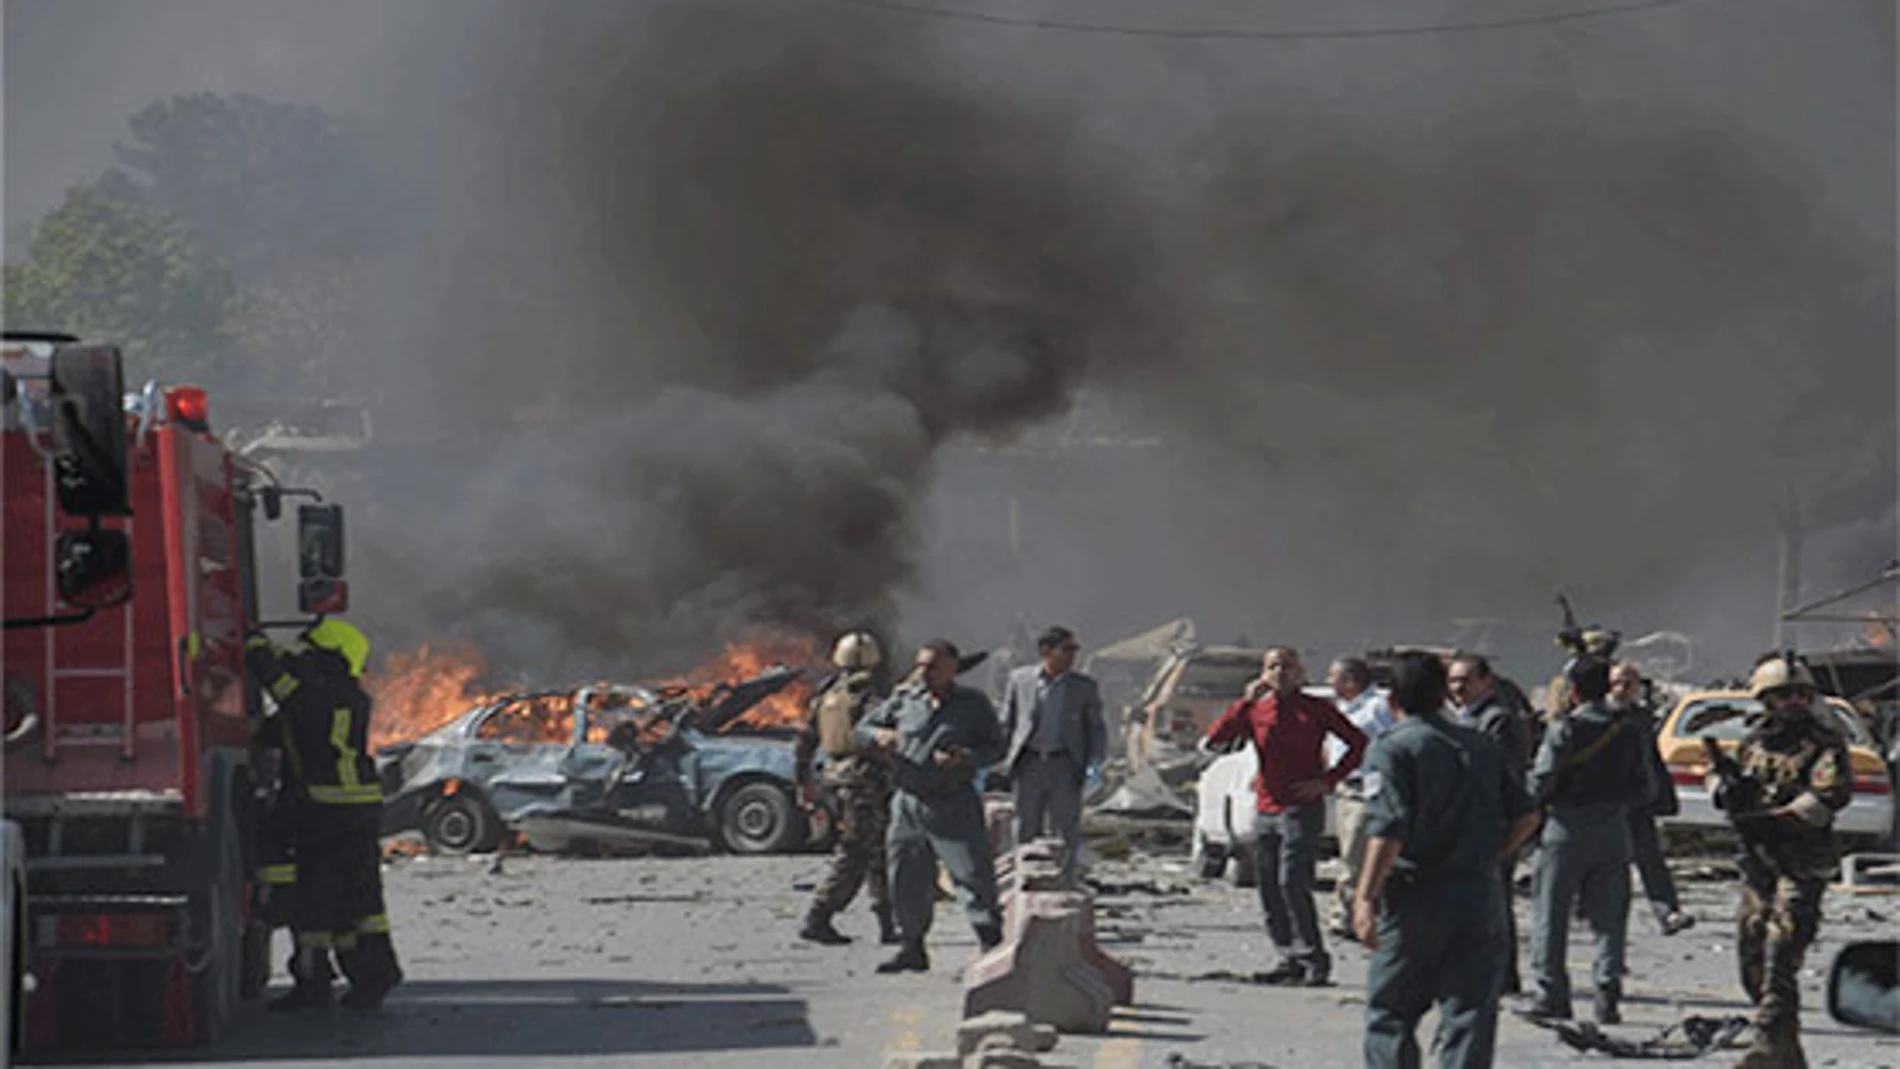 El atentado tuvo lugar la mañana de este lunes cerca de la embajada rusa en Darul Aman, en el suroeste de Kabul